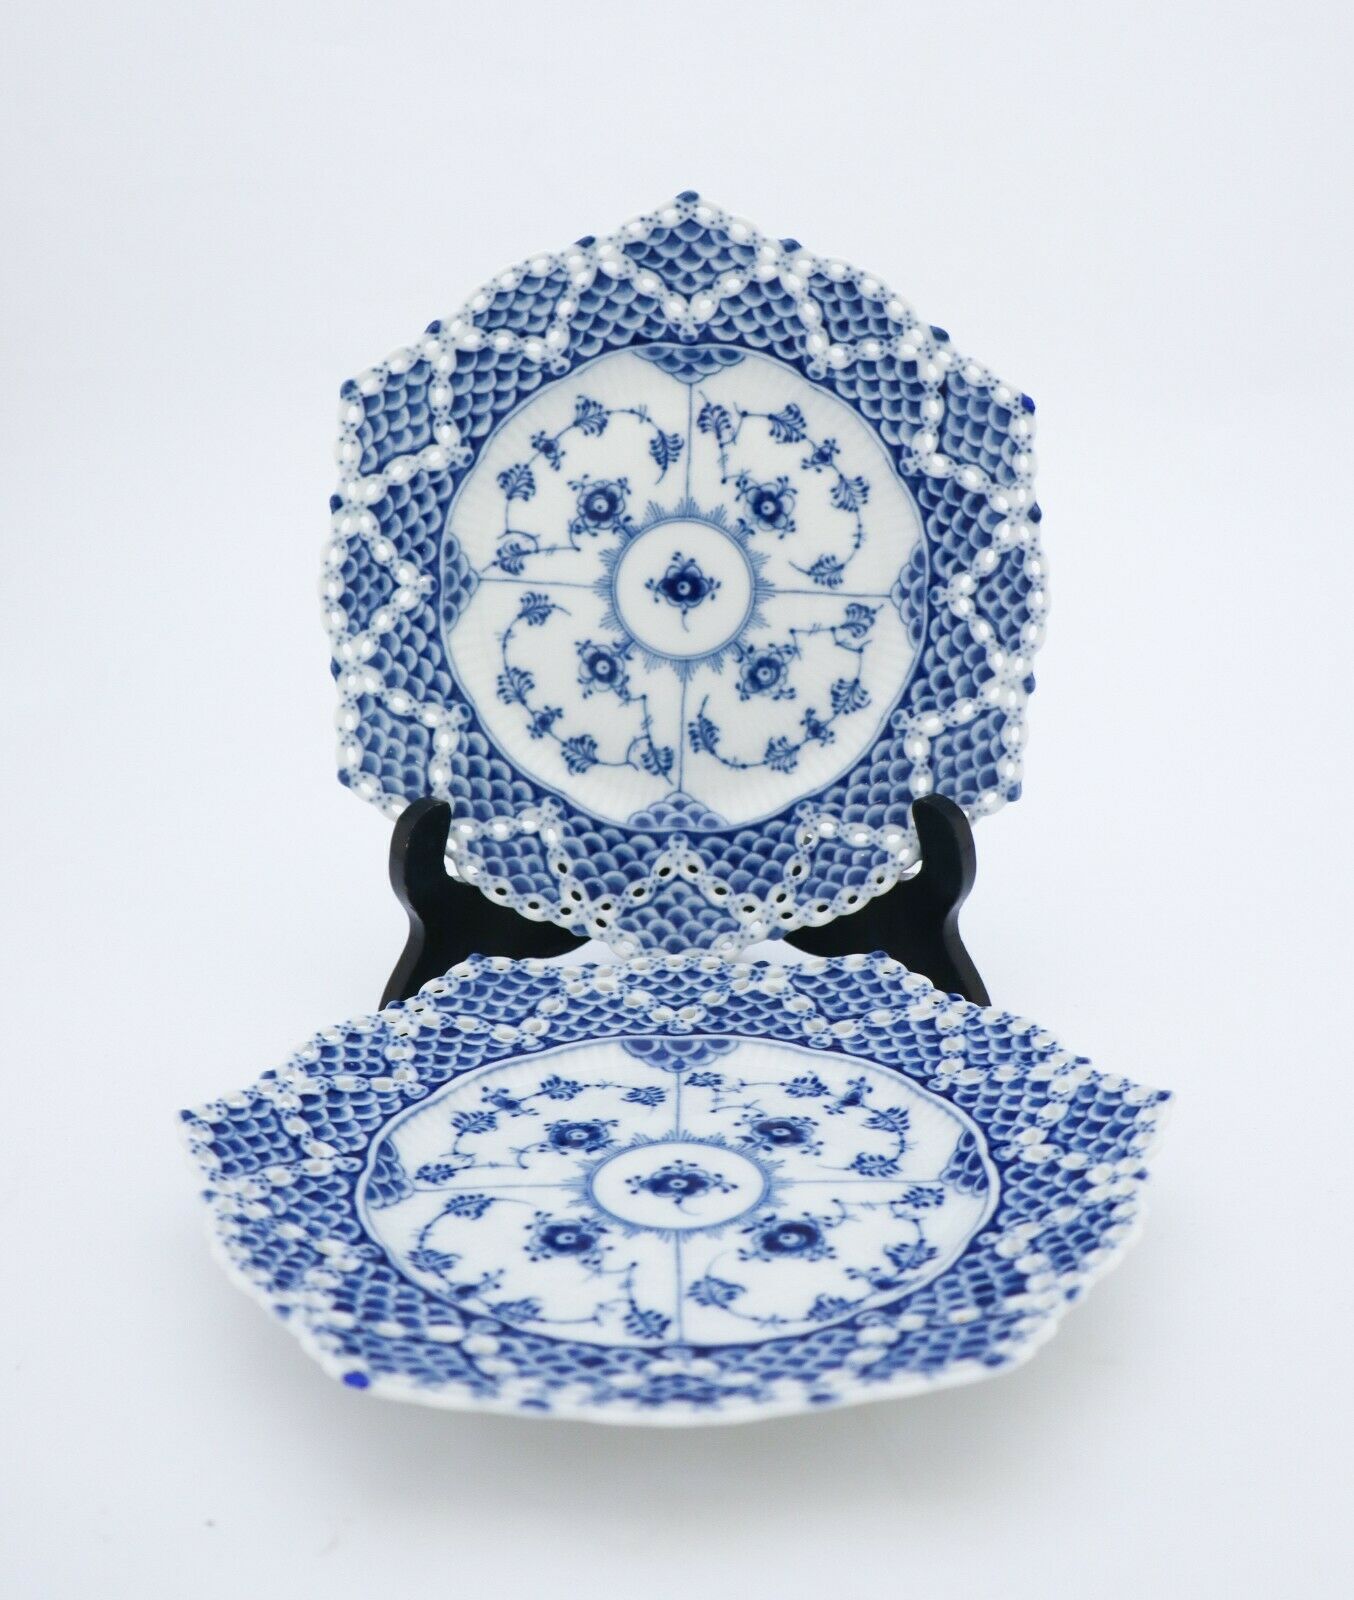 2 Plates #1094 - Blue Fluted - Royal Copenhagen Double Lace - 1st Quality